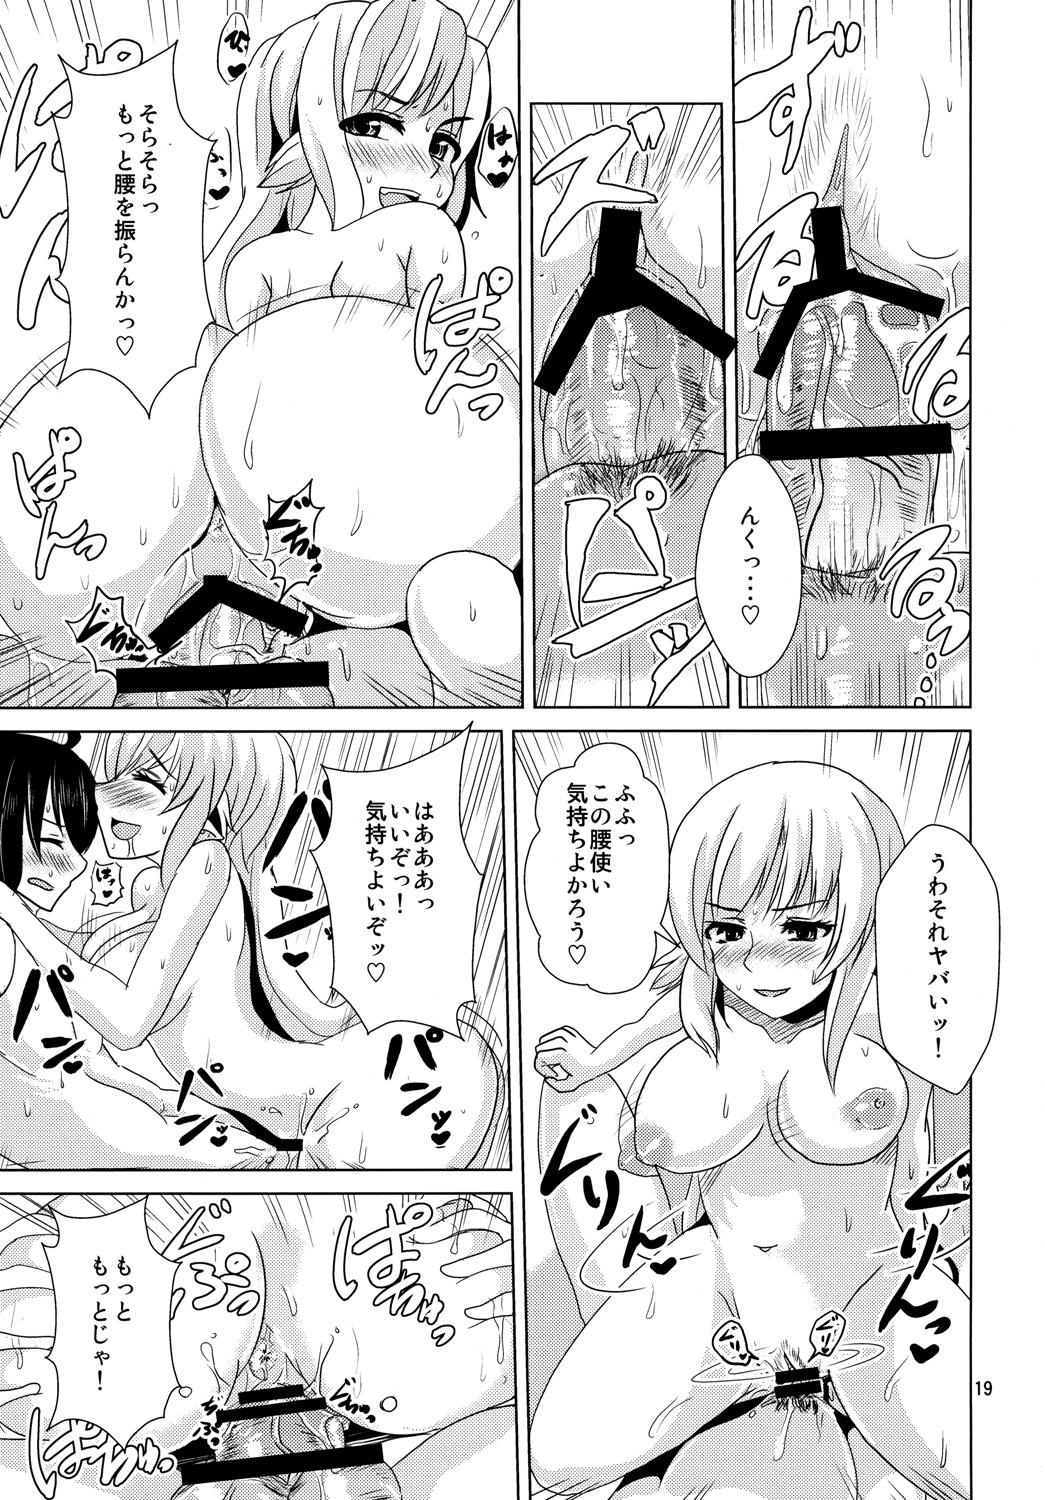 Shinobu Vamp Page 18 Of 30 bakemonogatari hentai manga, Shinobu Vamp Page 1...